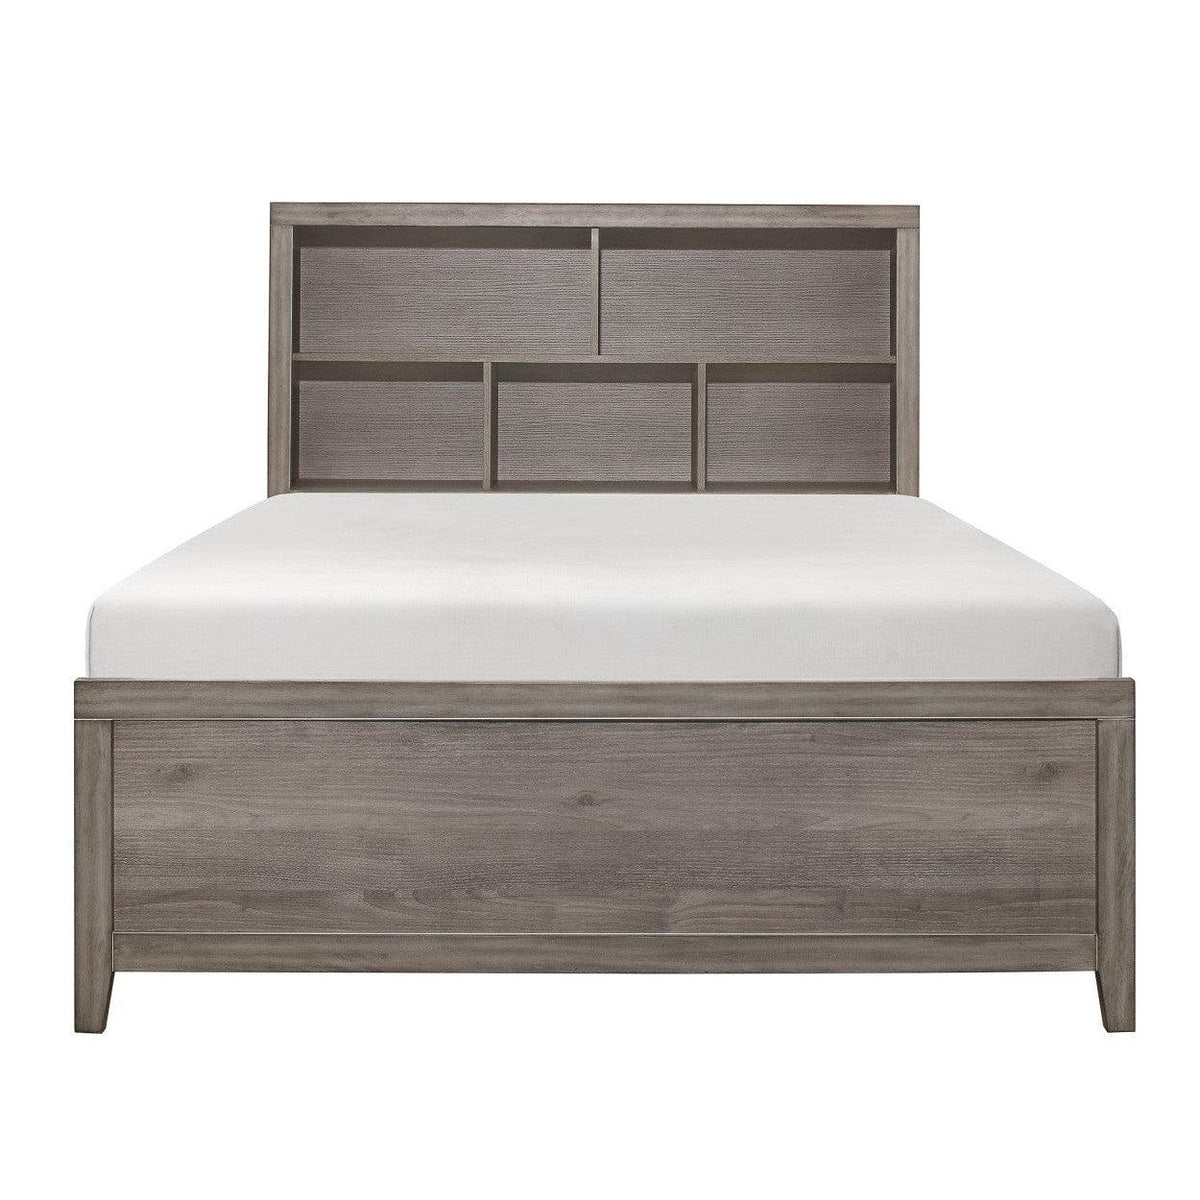 East West Furniture KD16Q-2GA08 - Juego de ropa de cama Queen de 3 piezas,  1 cama de plataforma de tela de lino color caqui oscuro acolchado y